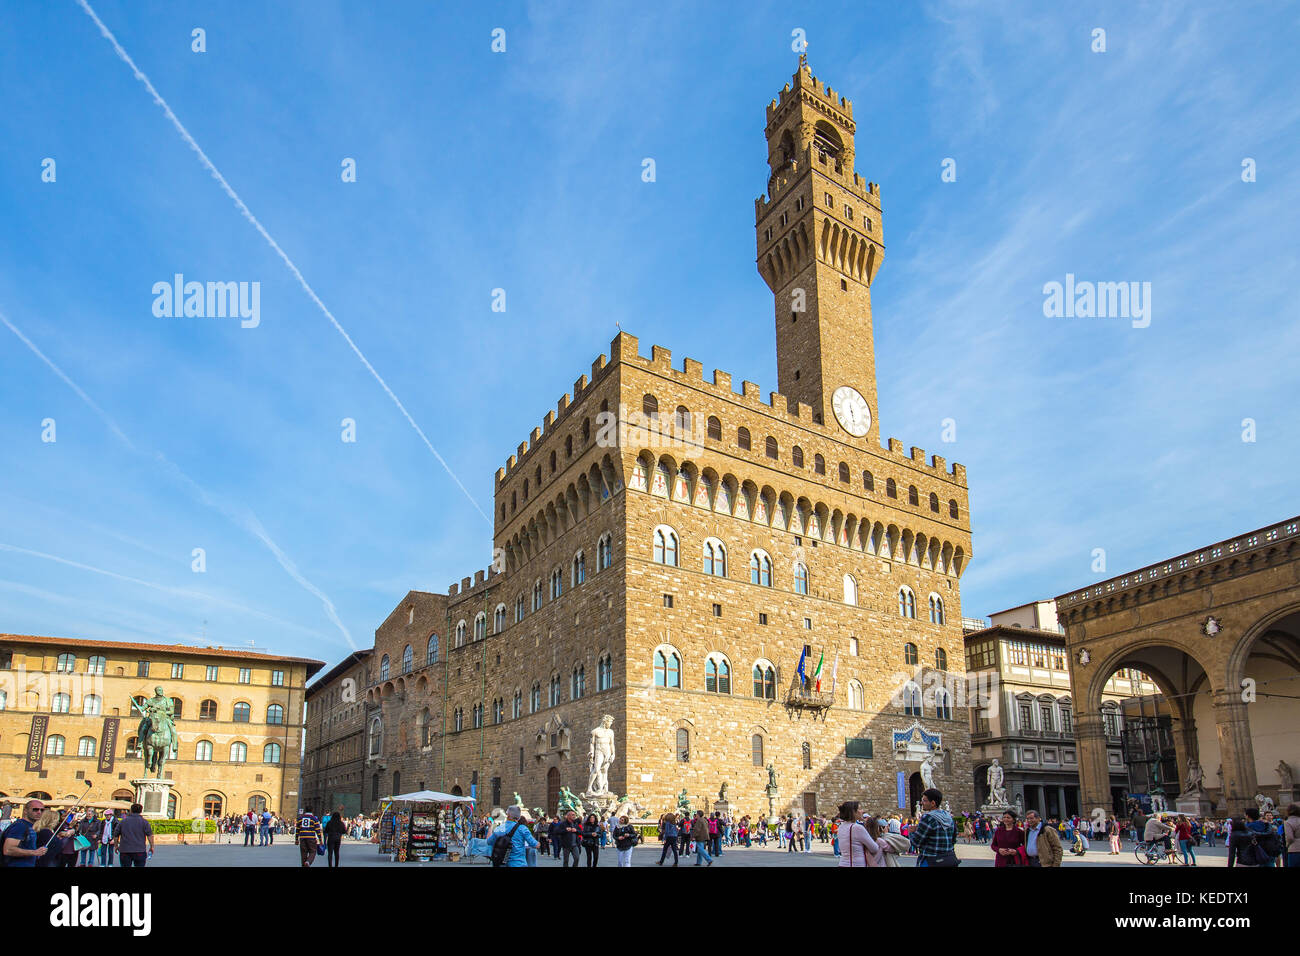 Florenz, Italien - 10 April, 2015: Piazza della Signoria vor dem Palazzo Vecchio in Florenz, Italien. Stockfoto